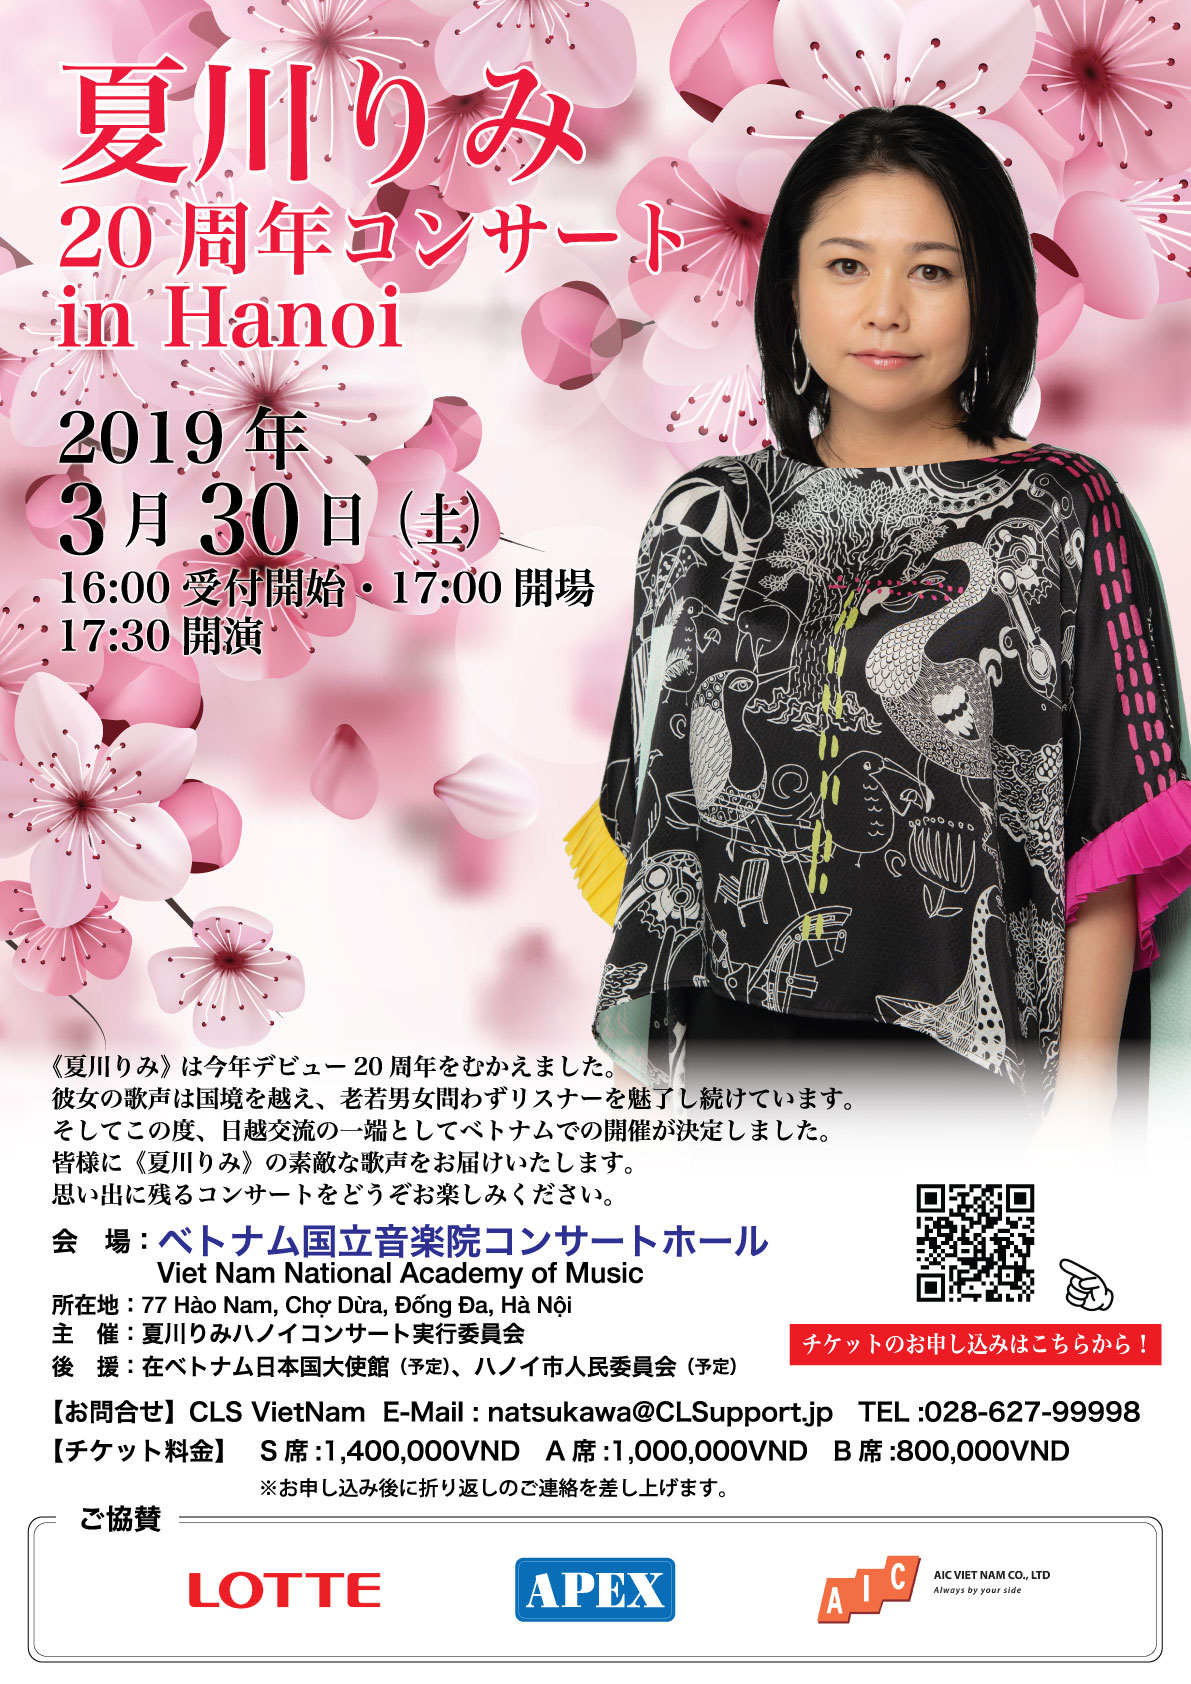 【3月30日】夏川りみ20周年コンサート開催 in ハノイ